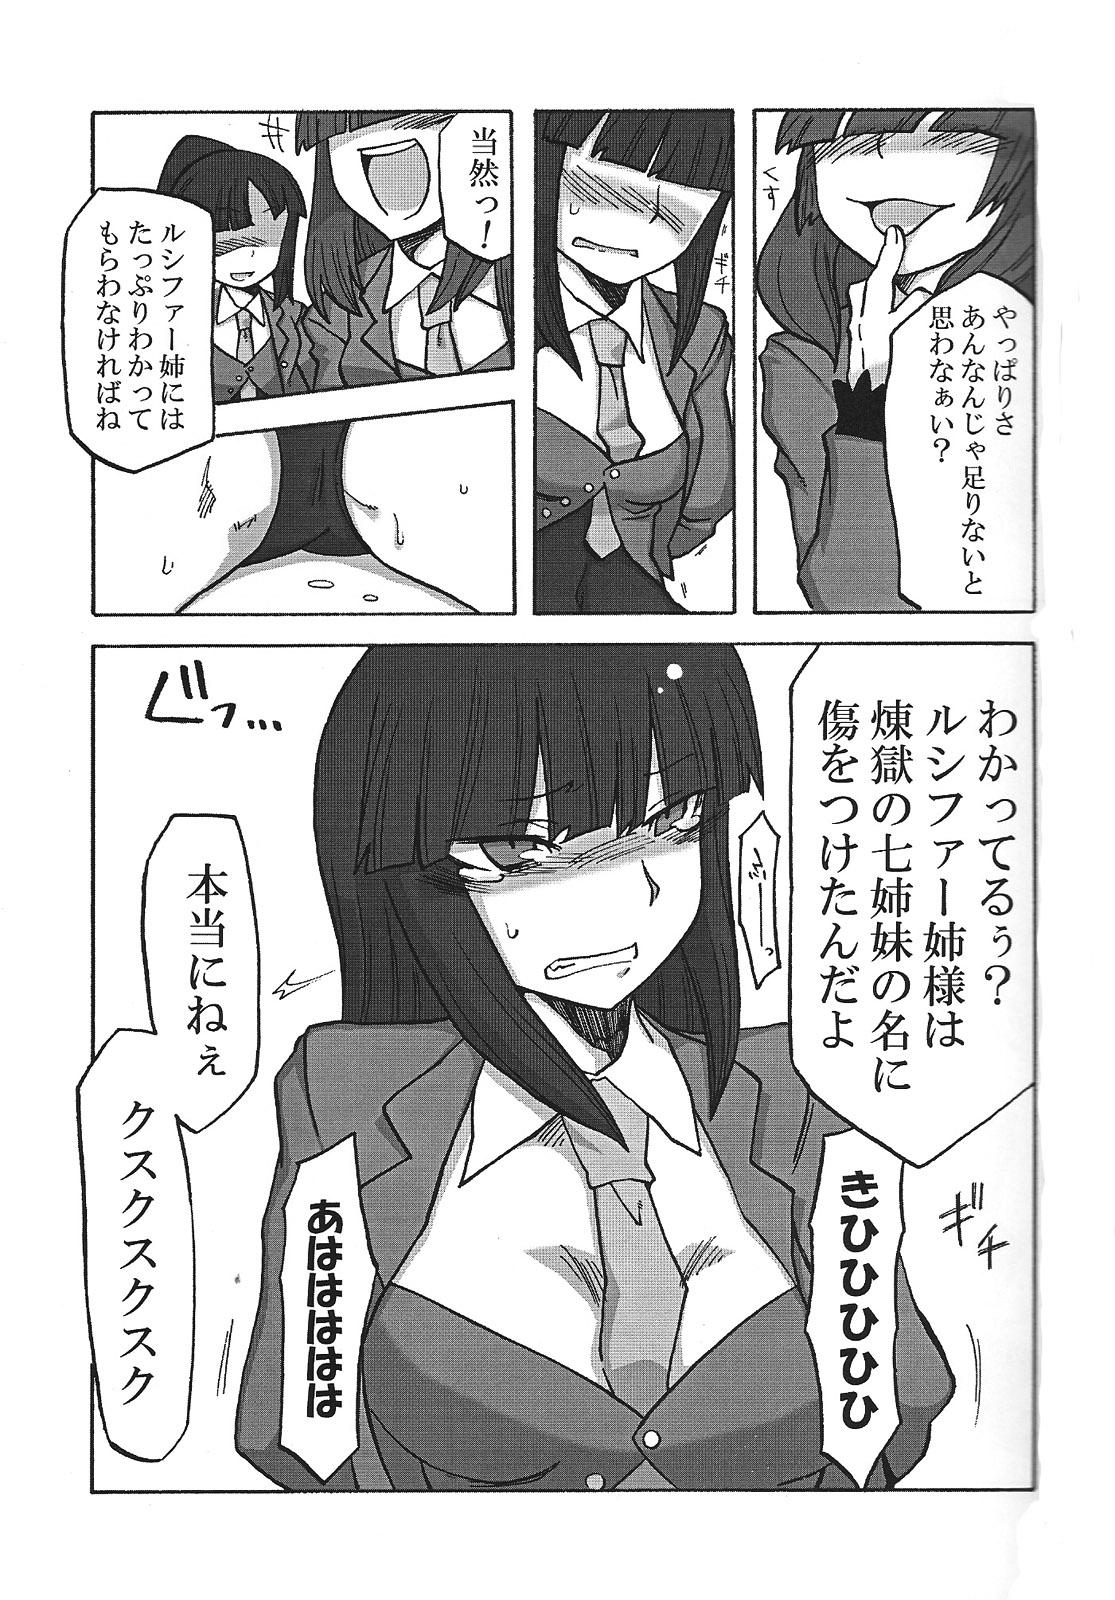 Rubbing Nakayoshi 7 Shimai - Umineko no naku koro ni Ftvgirls - Page 4